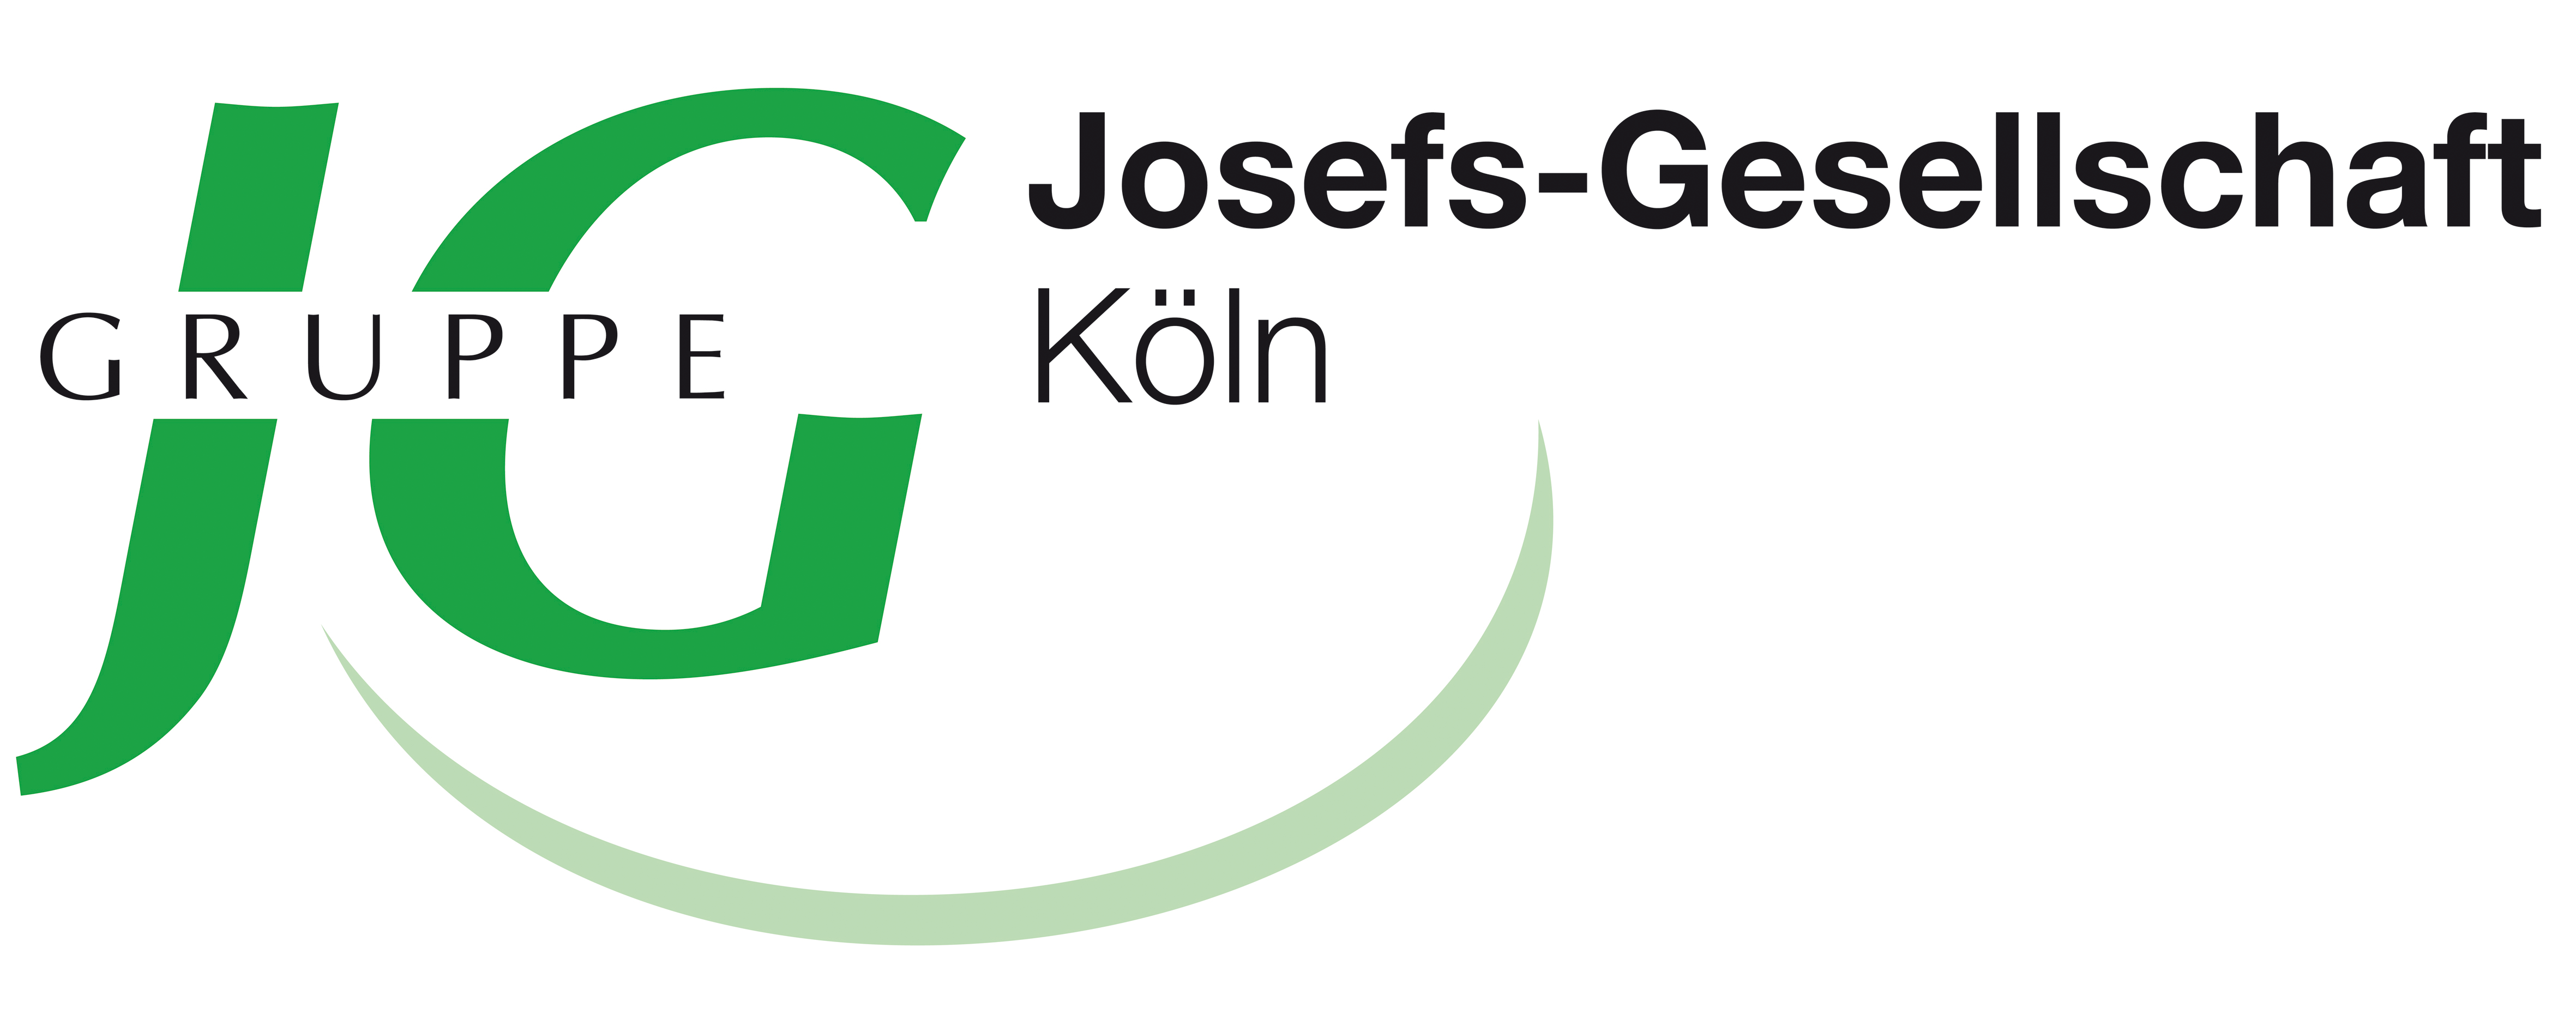 Josefs_Gesellschaft_Logo